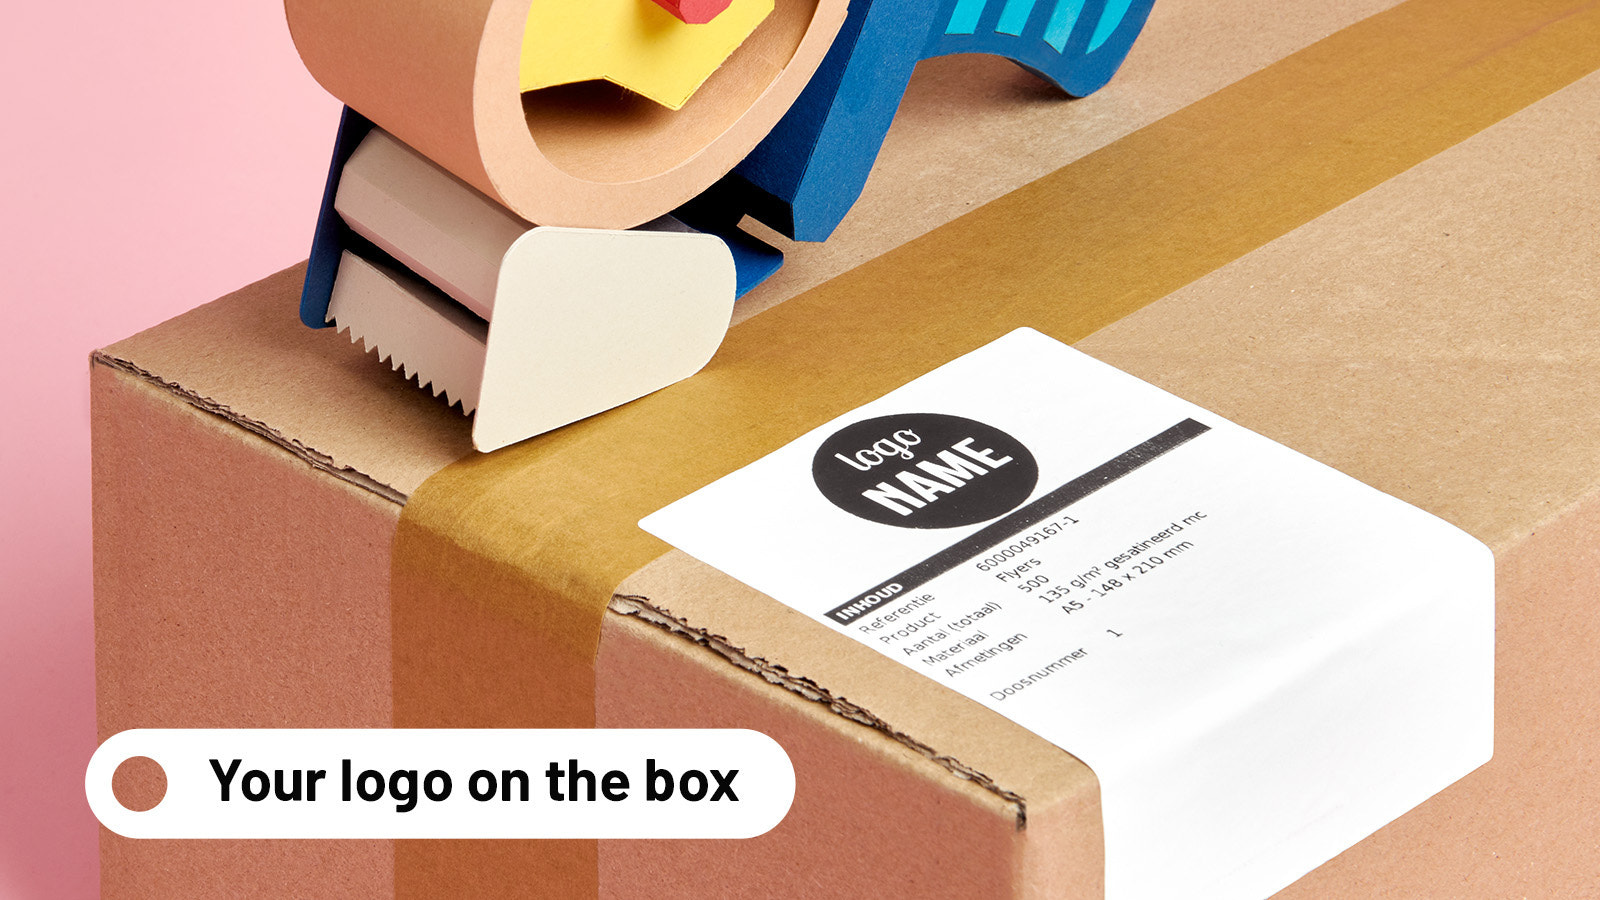 Vi sender white-label med dit logo på kassen